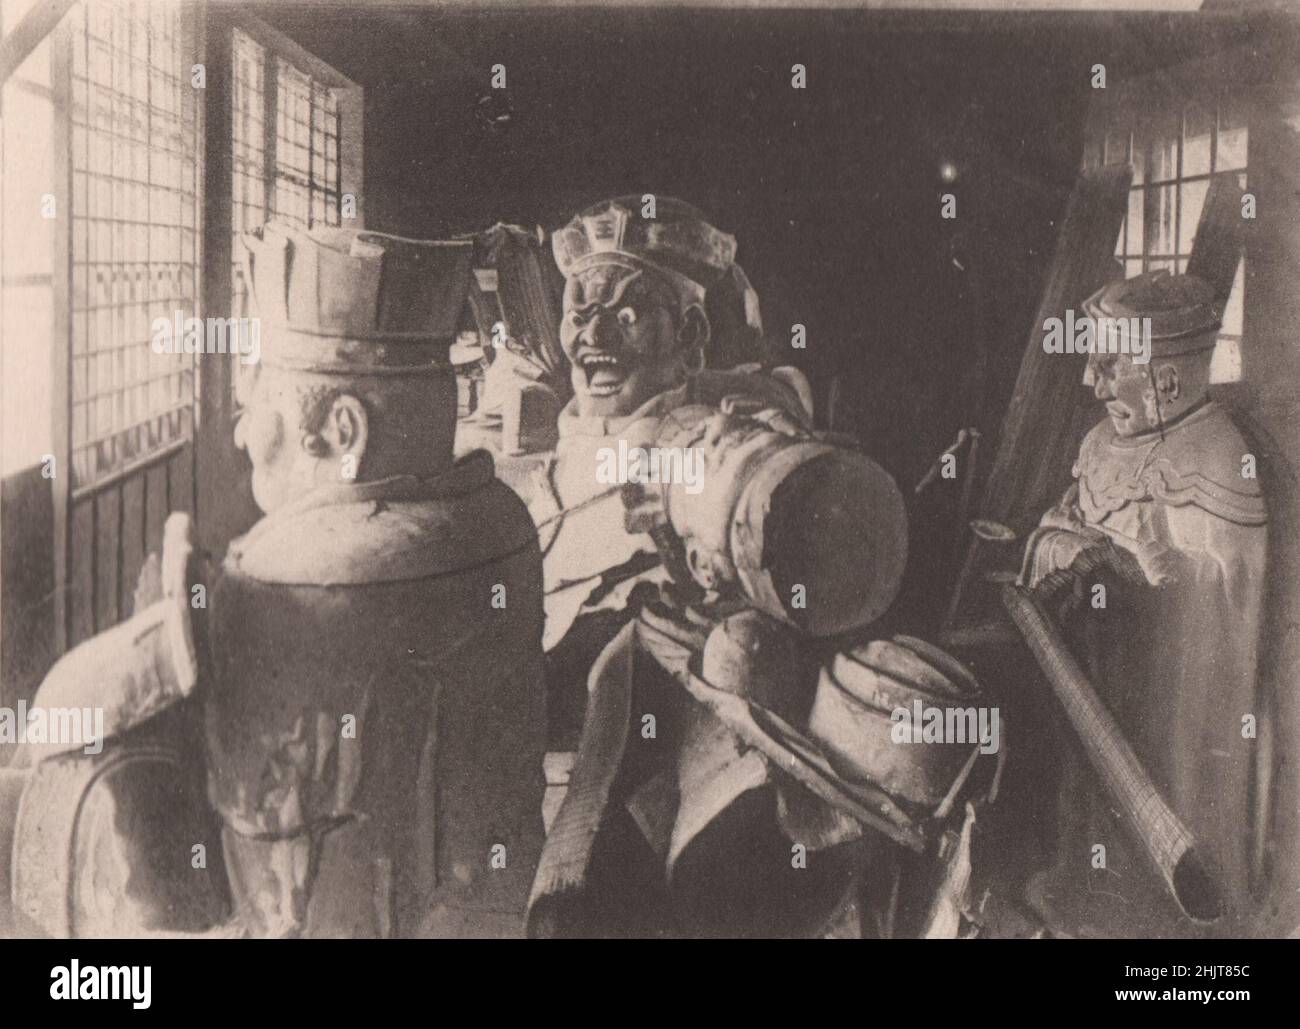 Terremoto de Japón 1923: Las imágenes budistas en el templo Engakuji, Kamakura, que fueron destruidas por el terremoto Foto de stock